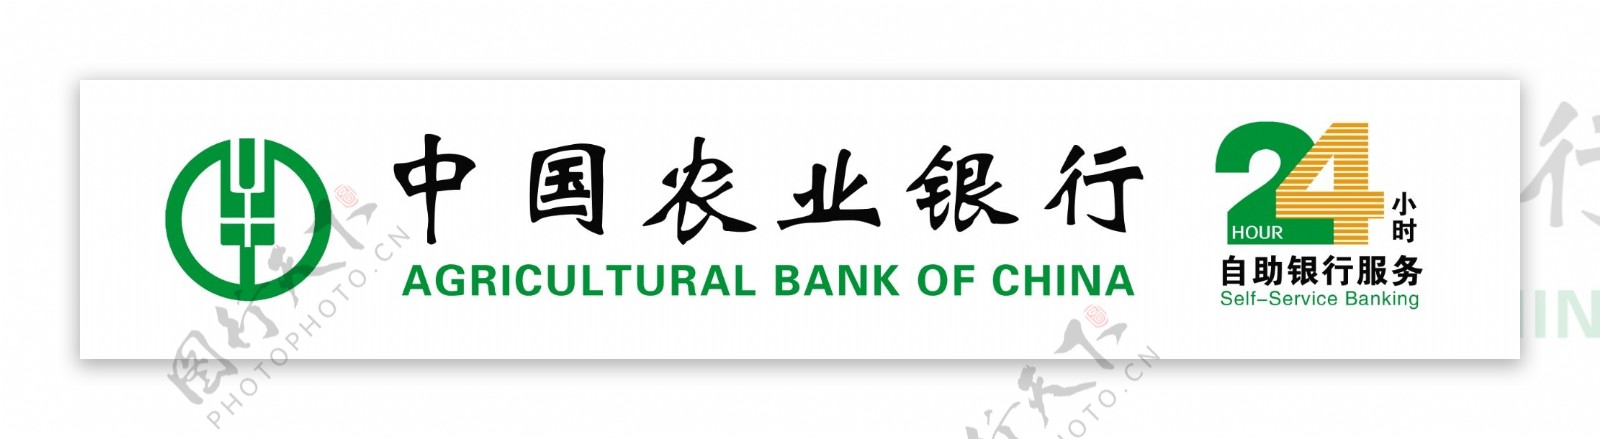 中国农业银行24小时农行绿色图片